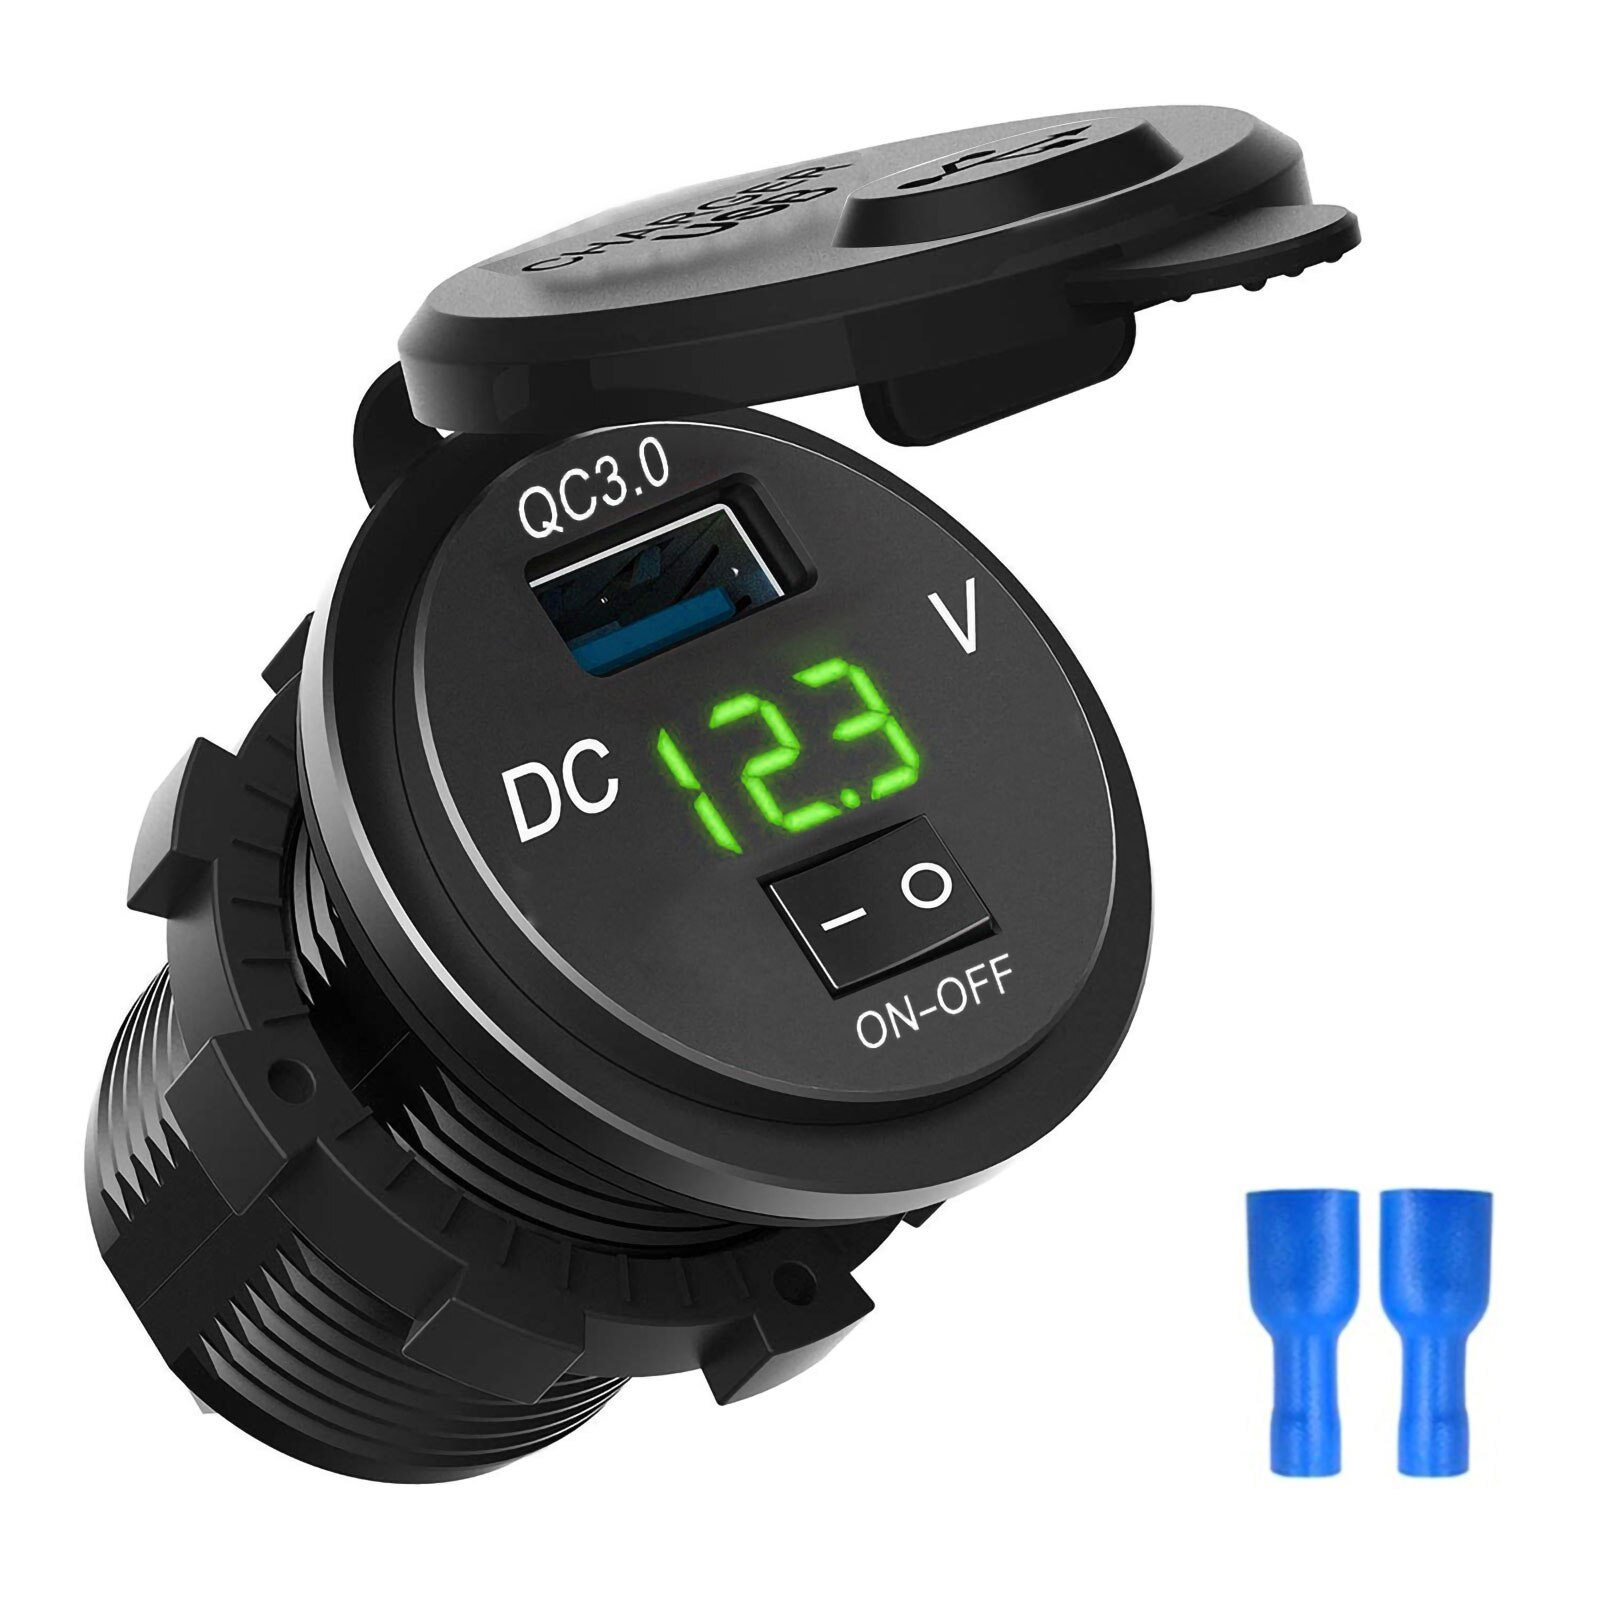 schnell aufladen 3,0 USB Auto Ladegerät Steckdose Digital Anzeige Voltmeter AUF-aus Schalter für Auto Marine ATV Motorrad: Grün